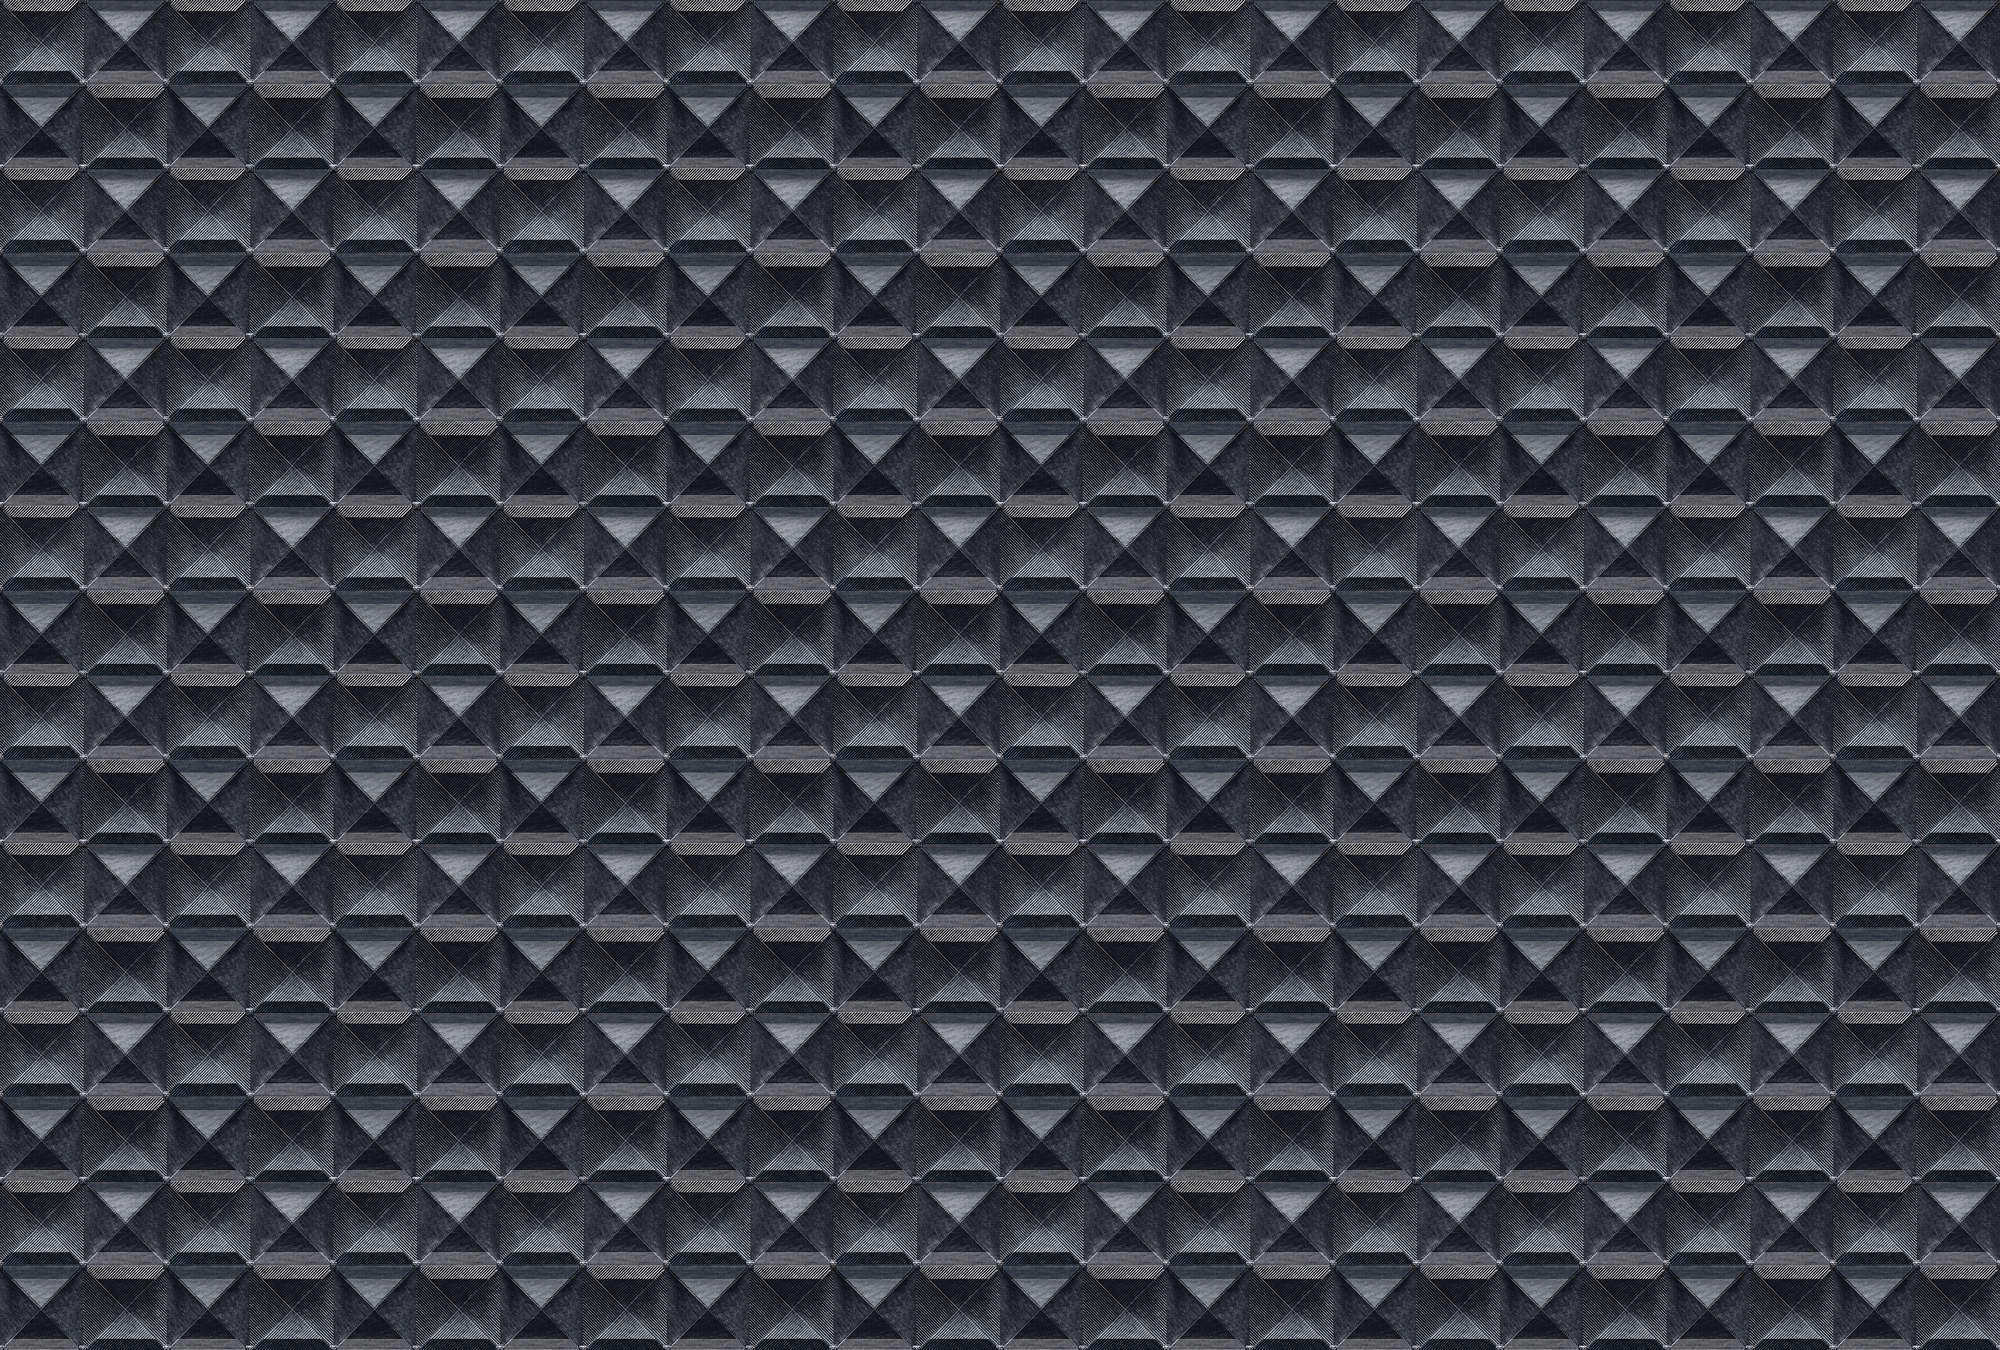             The edge 2 - Papel pintado 3D con diseño de rombos metálicos - azul, negro | vellón liso nacarado
        